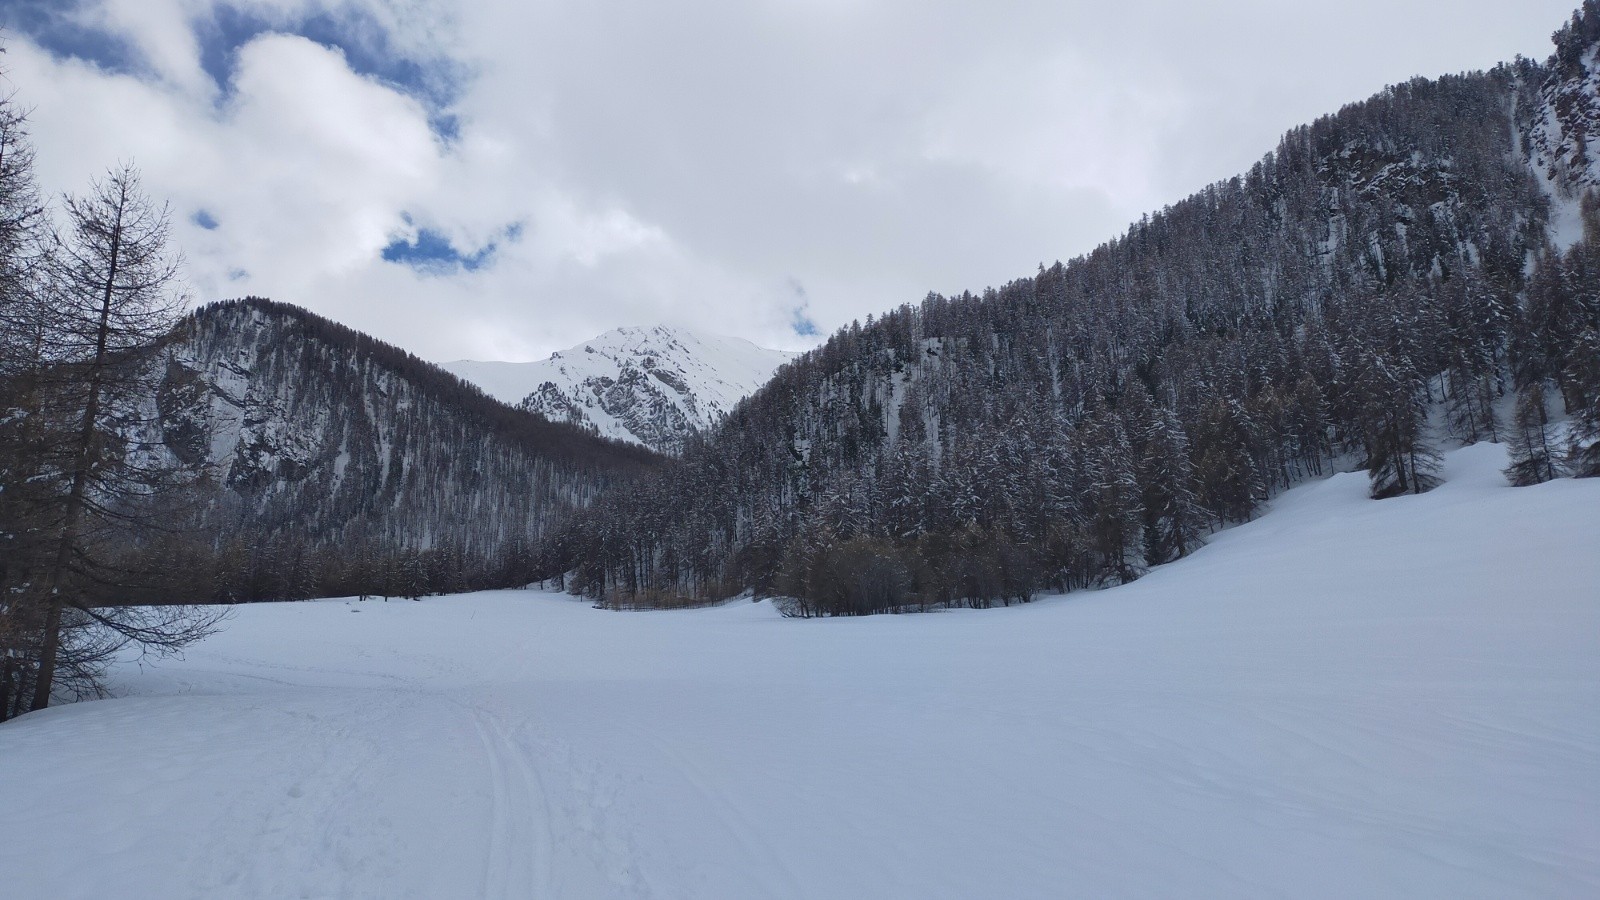 Départ sur les pistes de ski de fond plus damées, pointe des Marcelettes au fond 